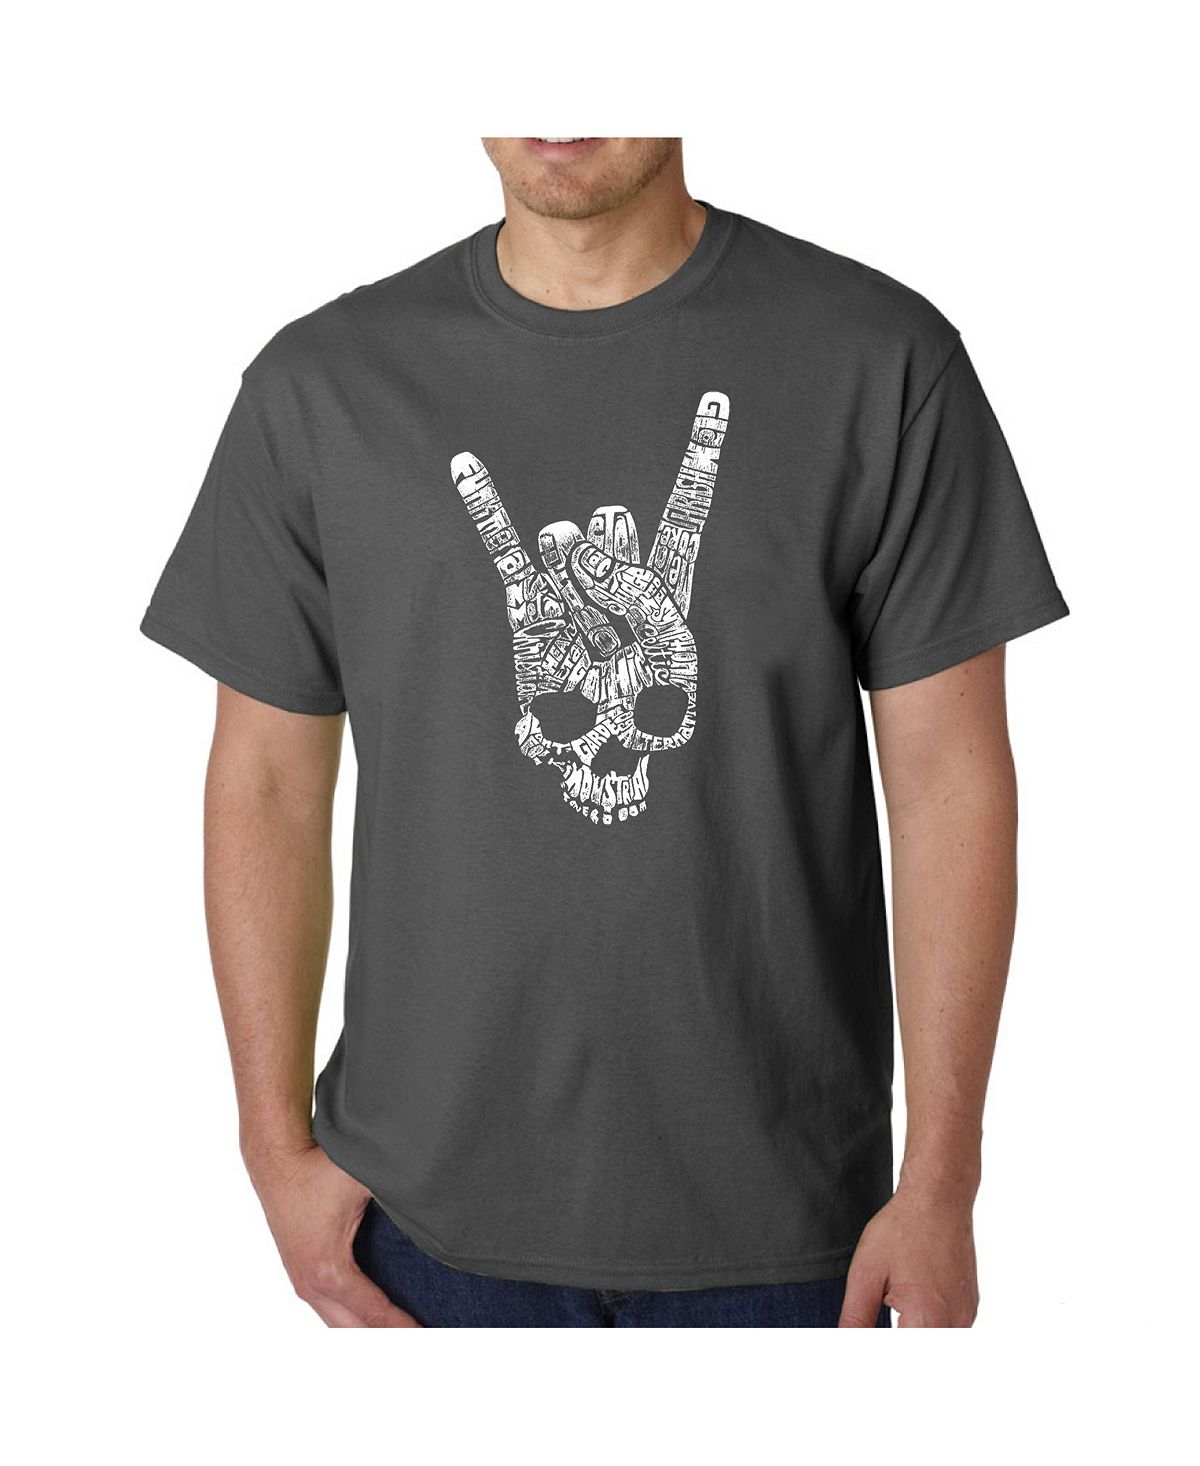 Мужская футболка с надписью heavy metal genres word art LA Pop Art, серый